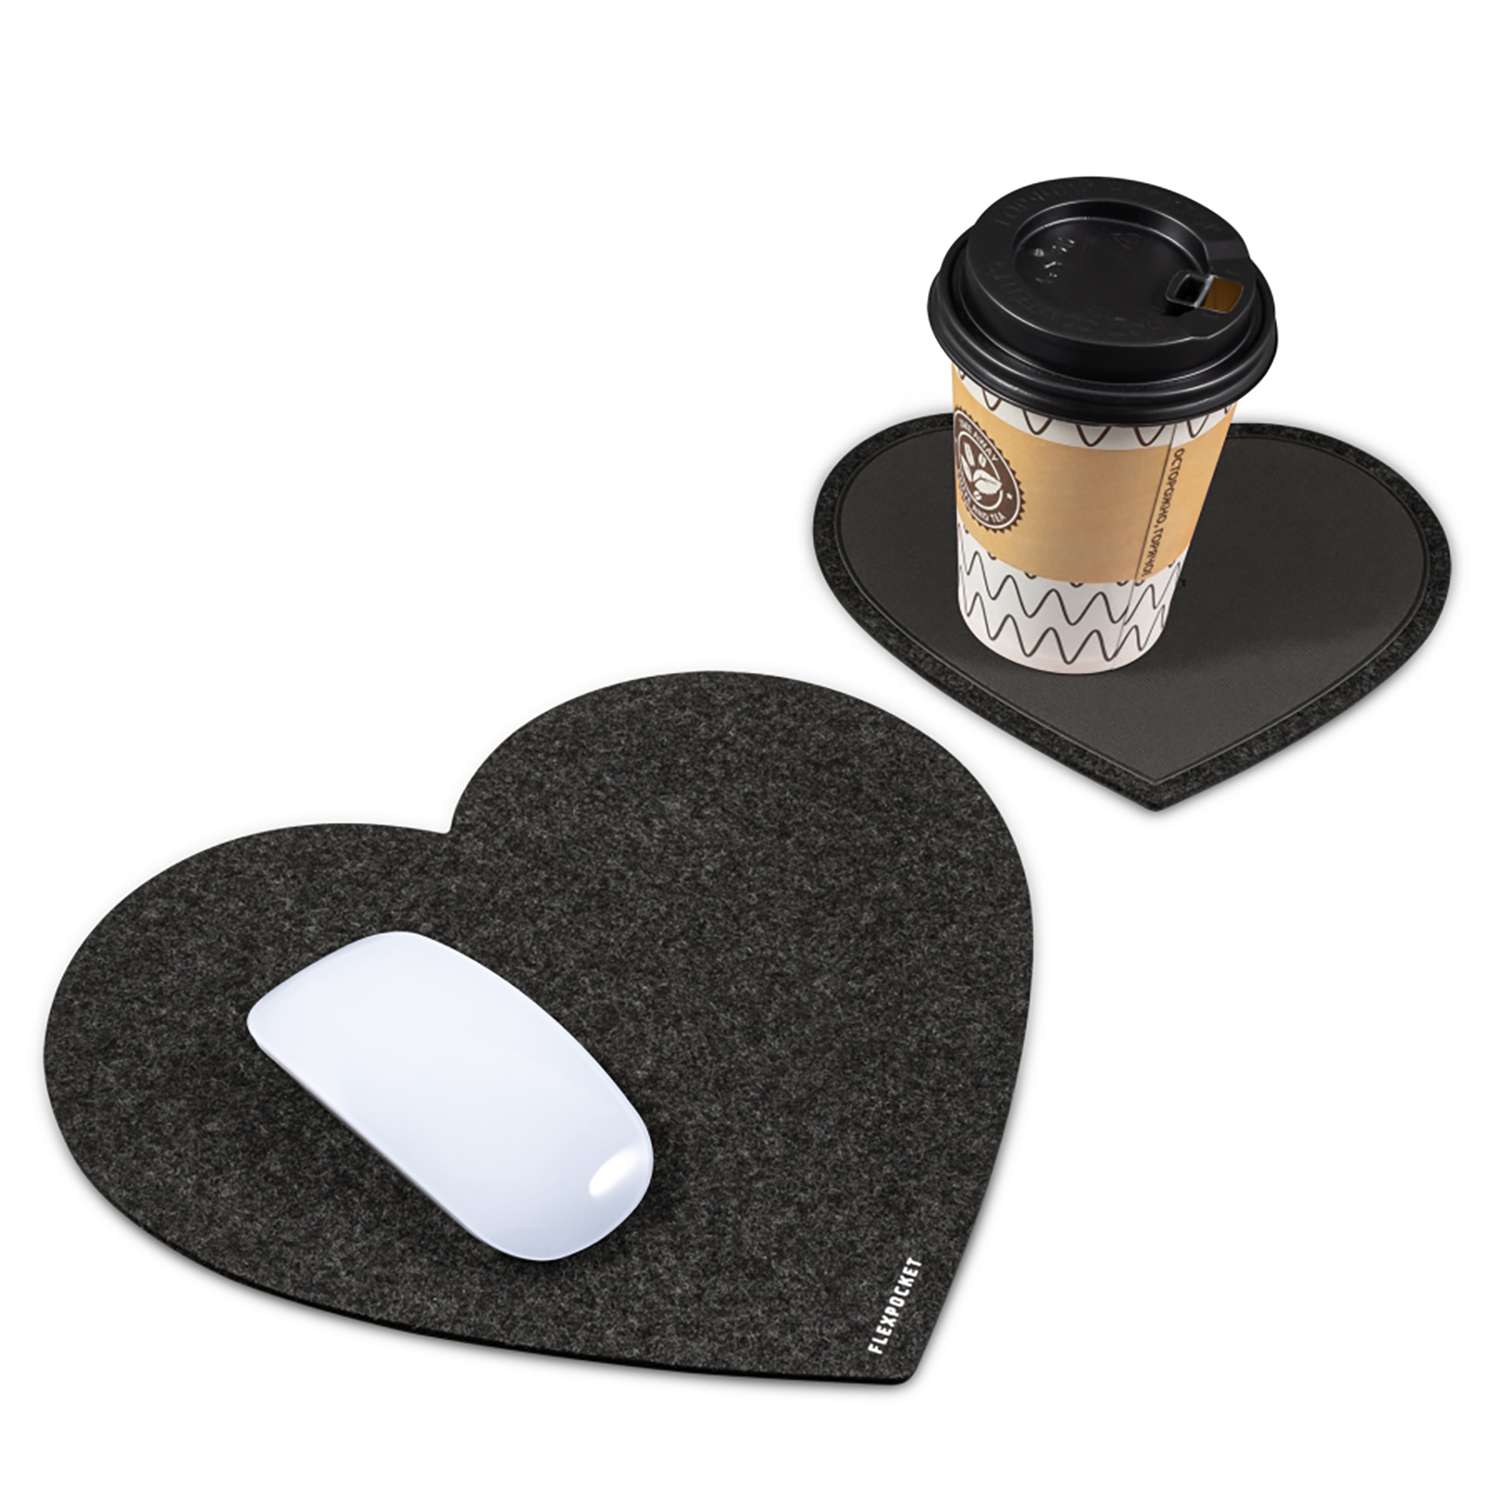 Настольный коврик Flexpocket для мыши в виде сердца с подставкой под кружку черный 2 шт в комплекте - фото 2